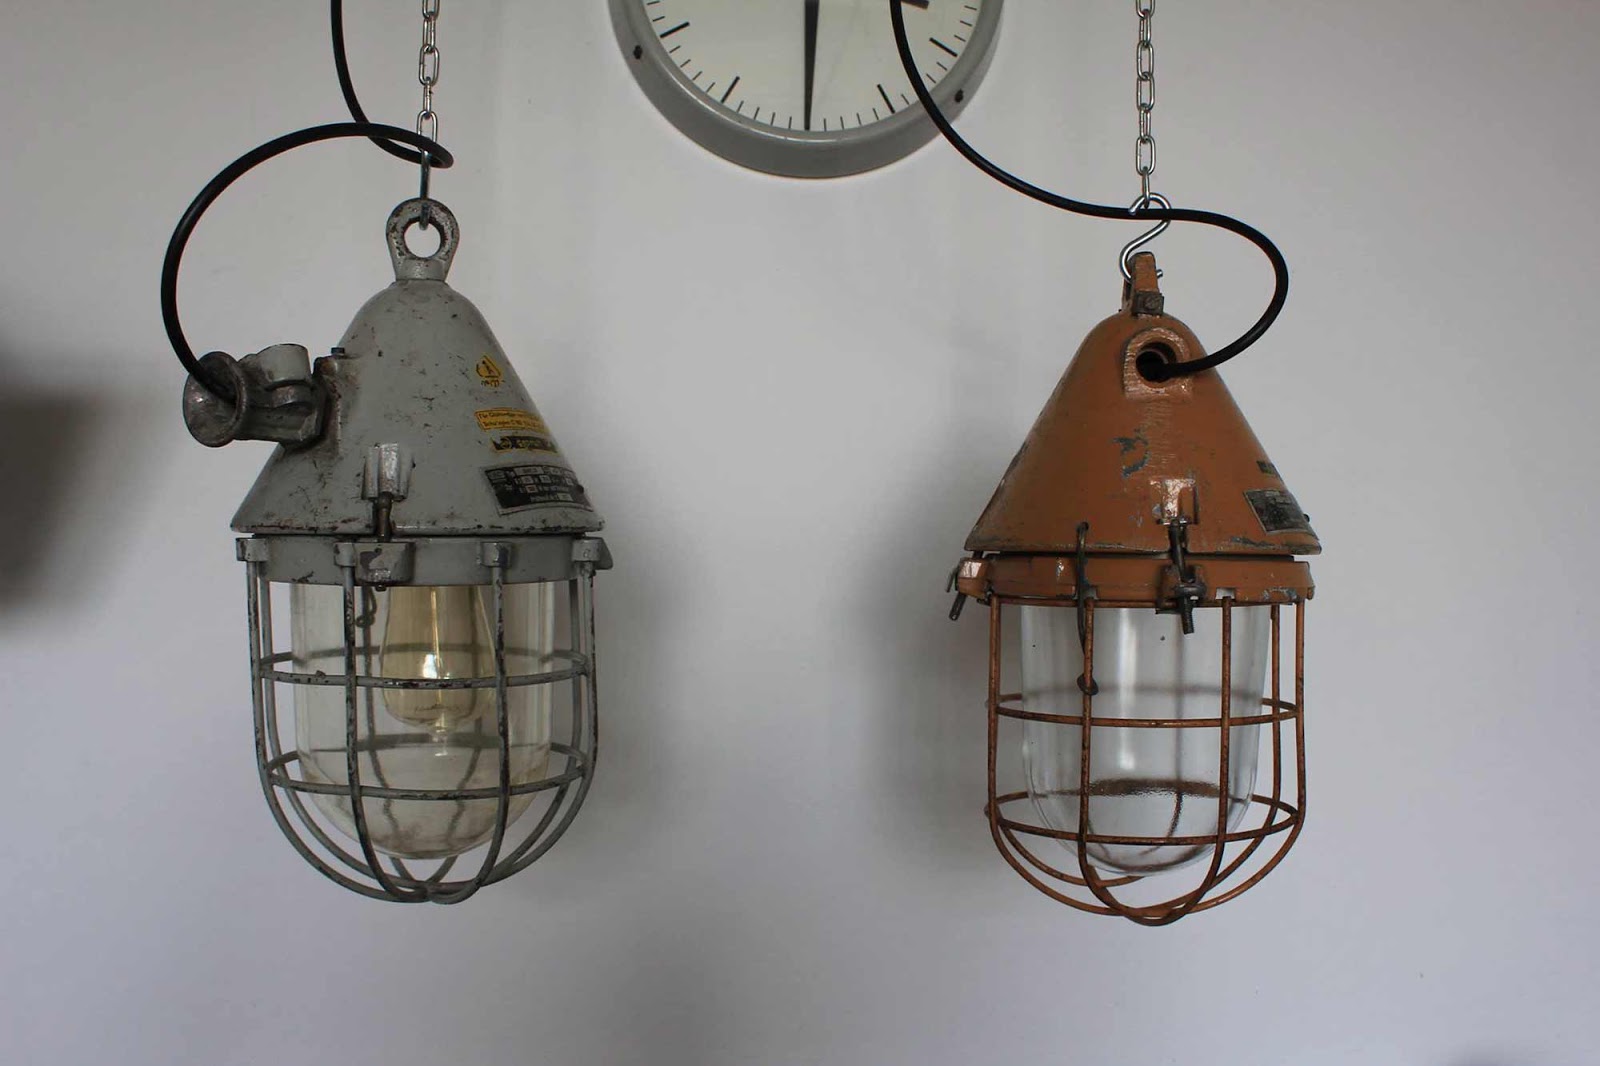 Industria - industriële lampen, lampen met verhaal - Review – ElsaRblog